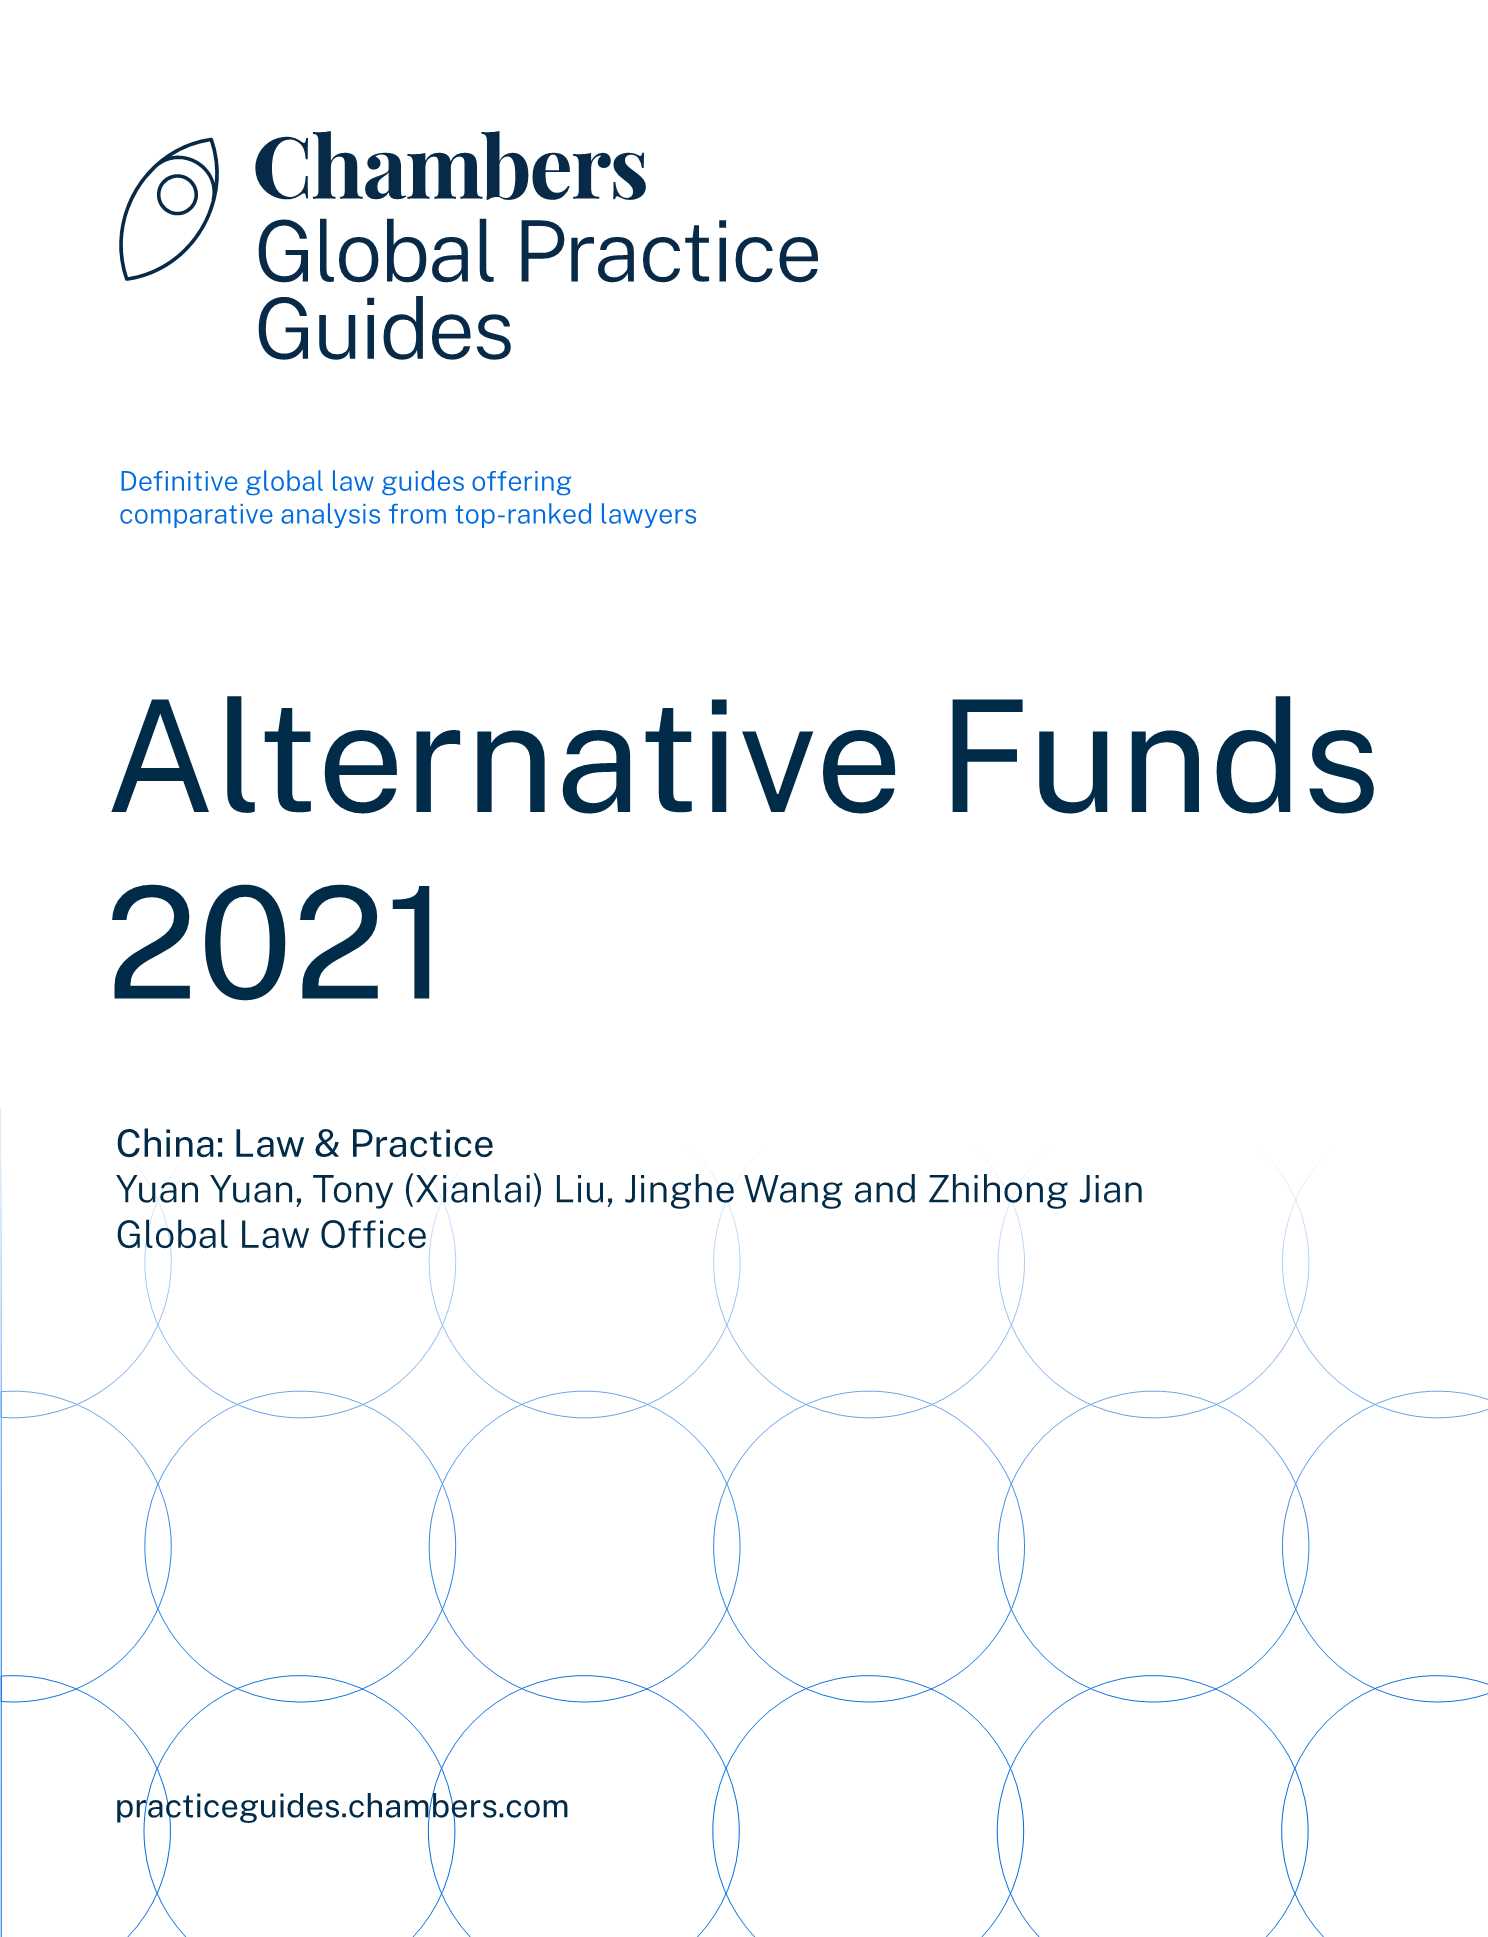 环球律师事务所-另类基金法律与实践（2021版）之中国篇（英）-2021.11-15页